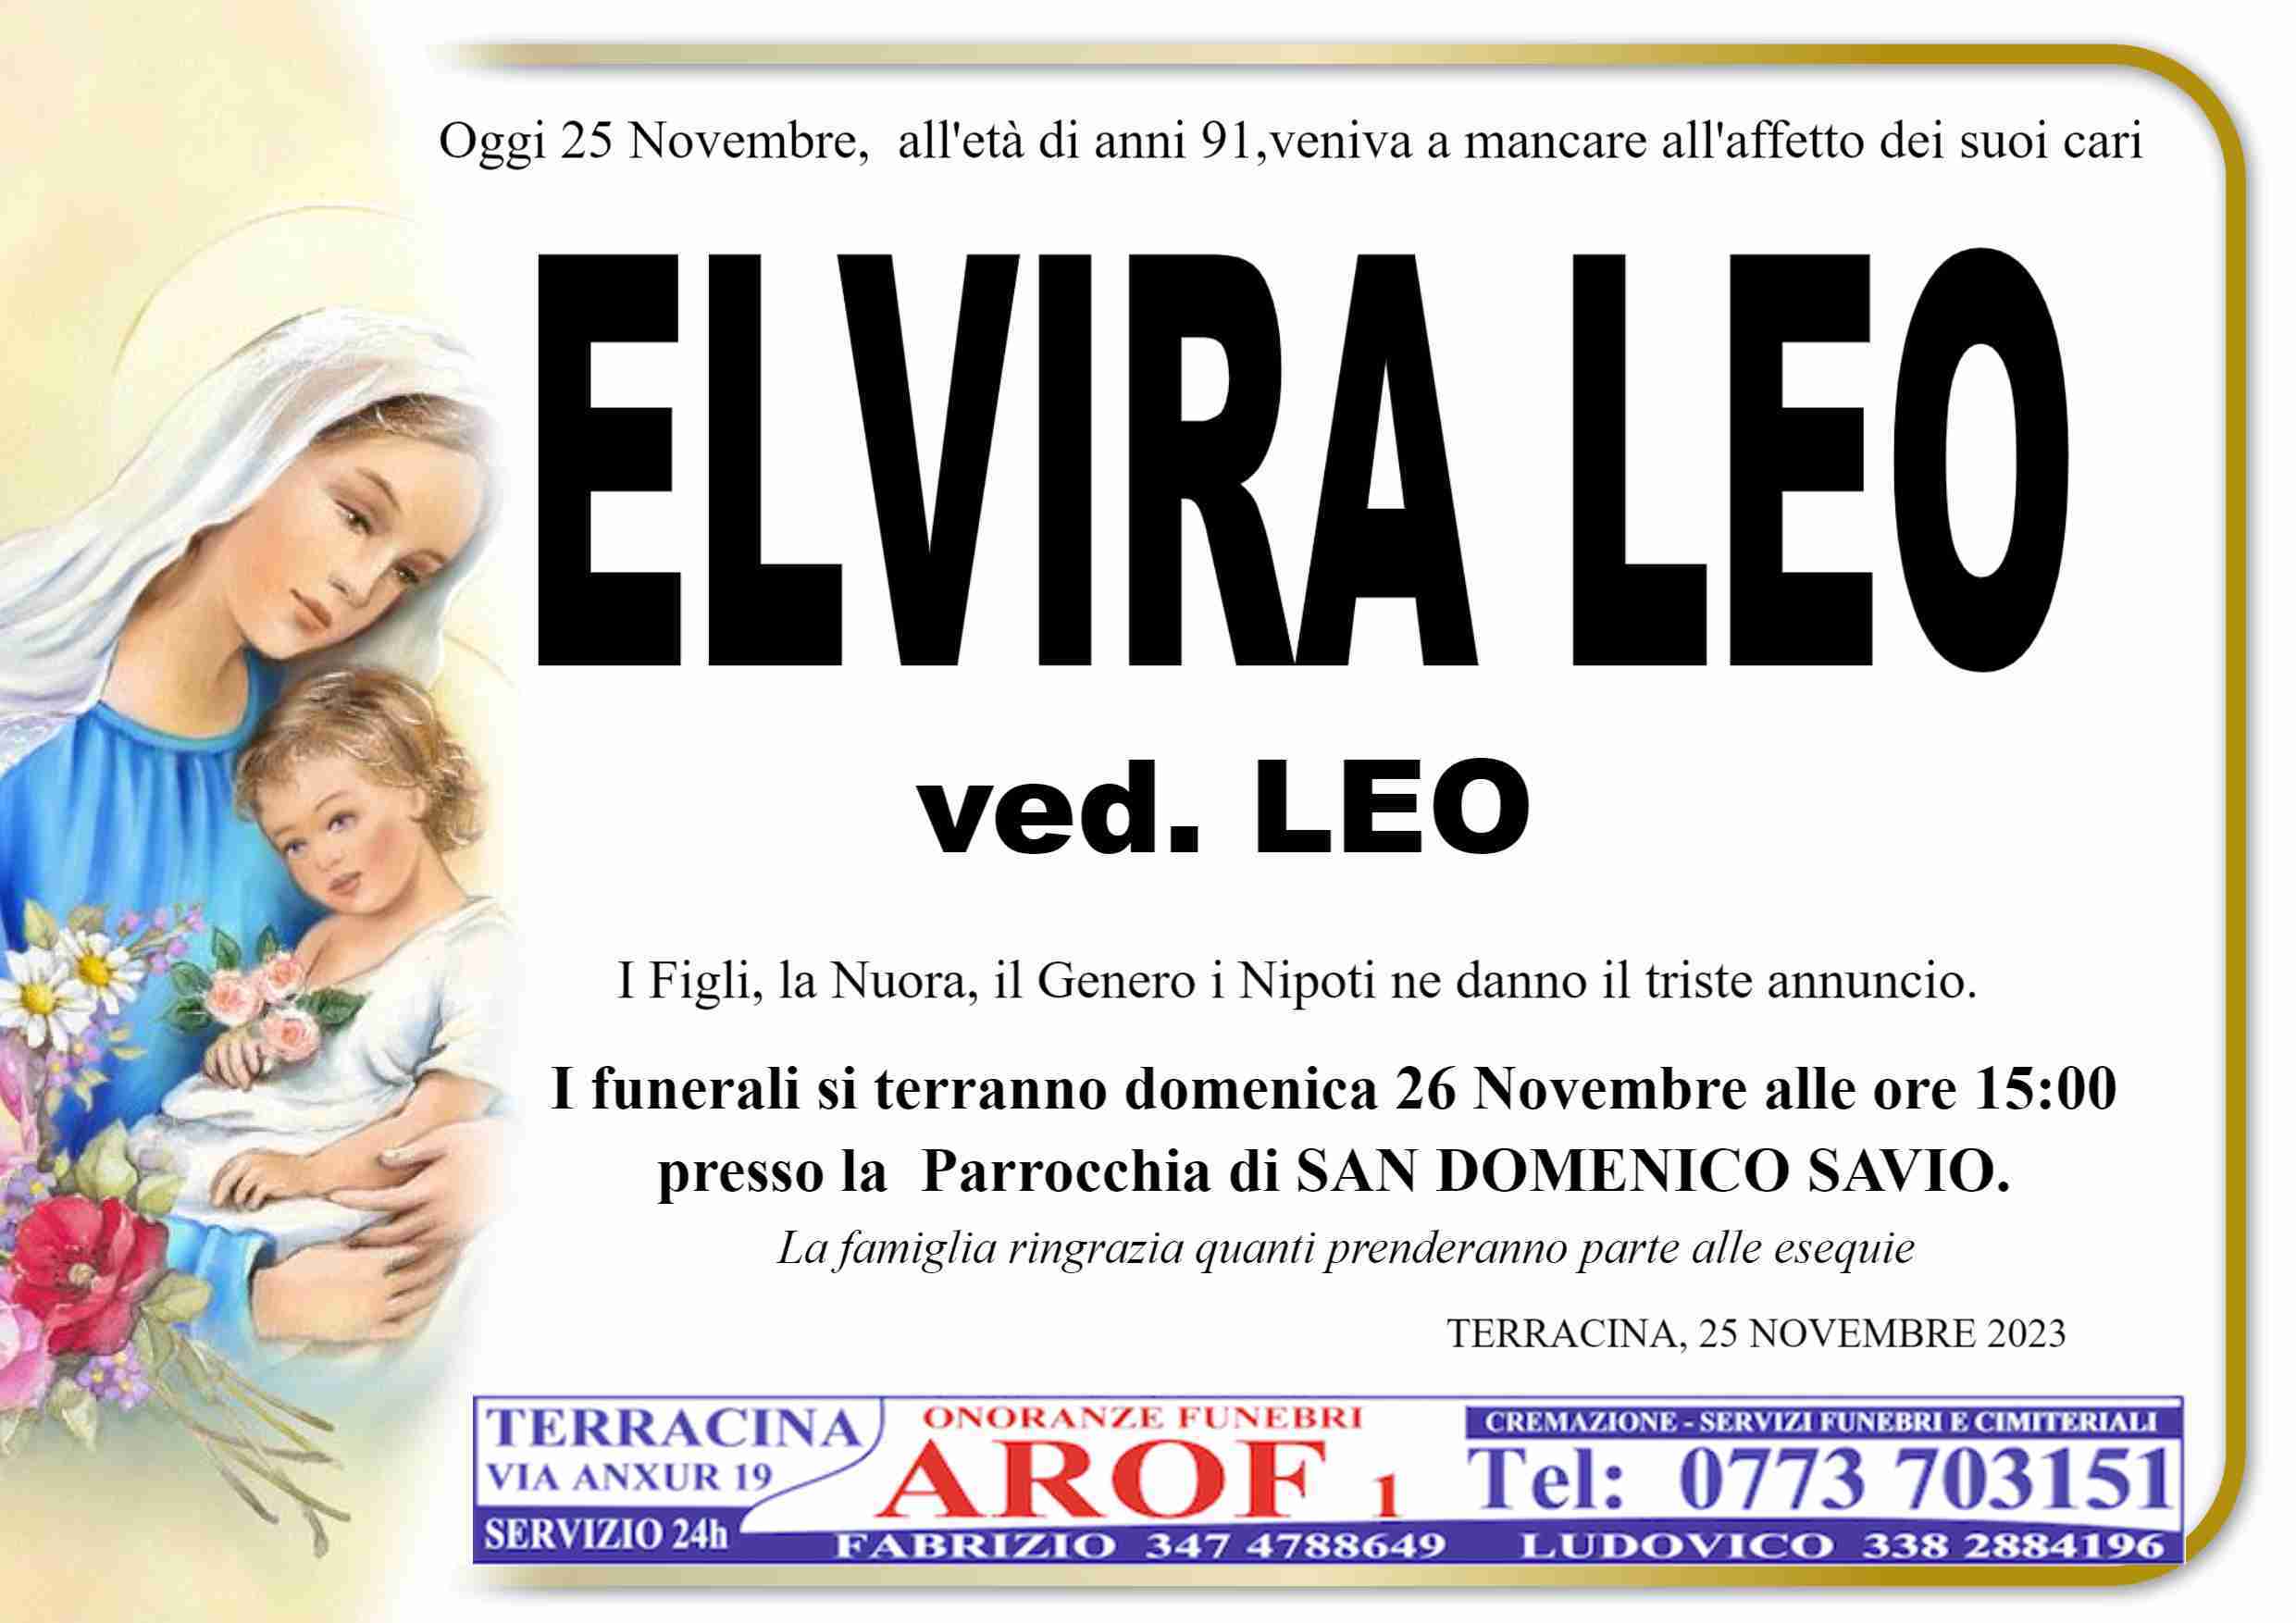 Leo Elvira